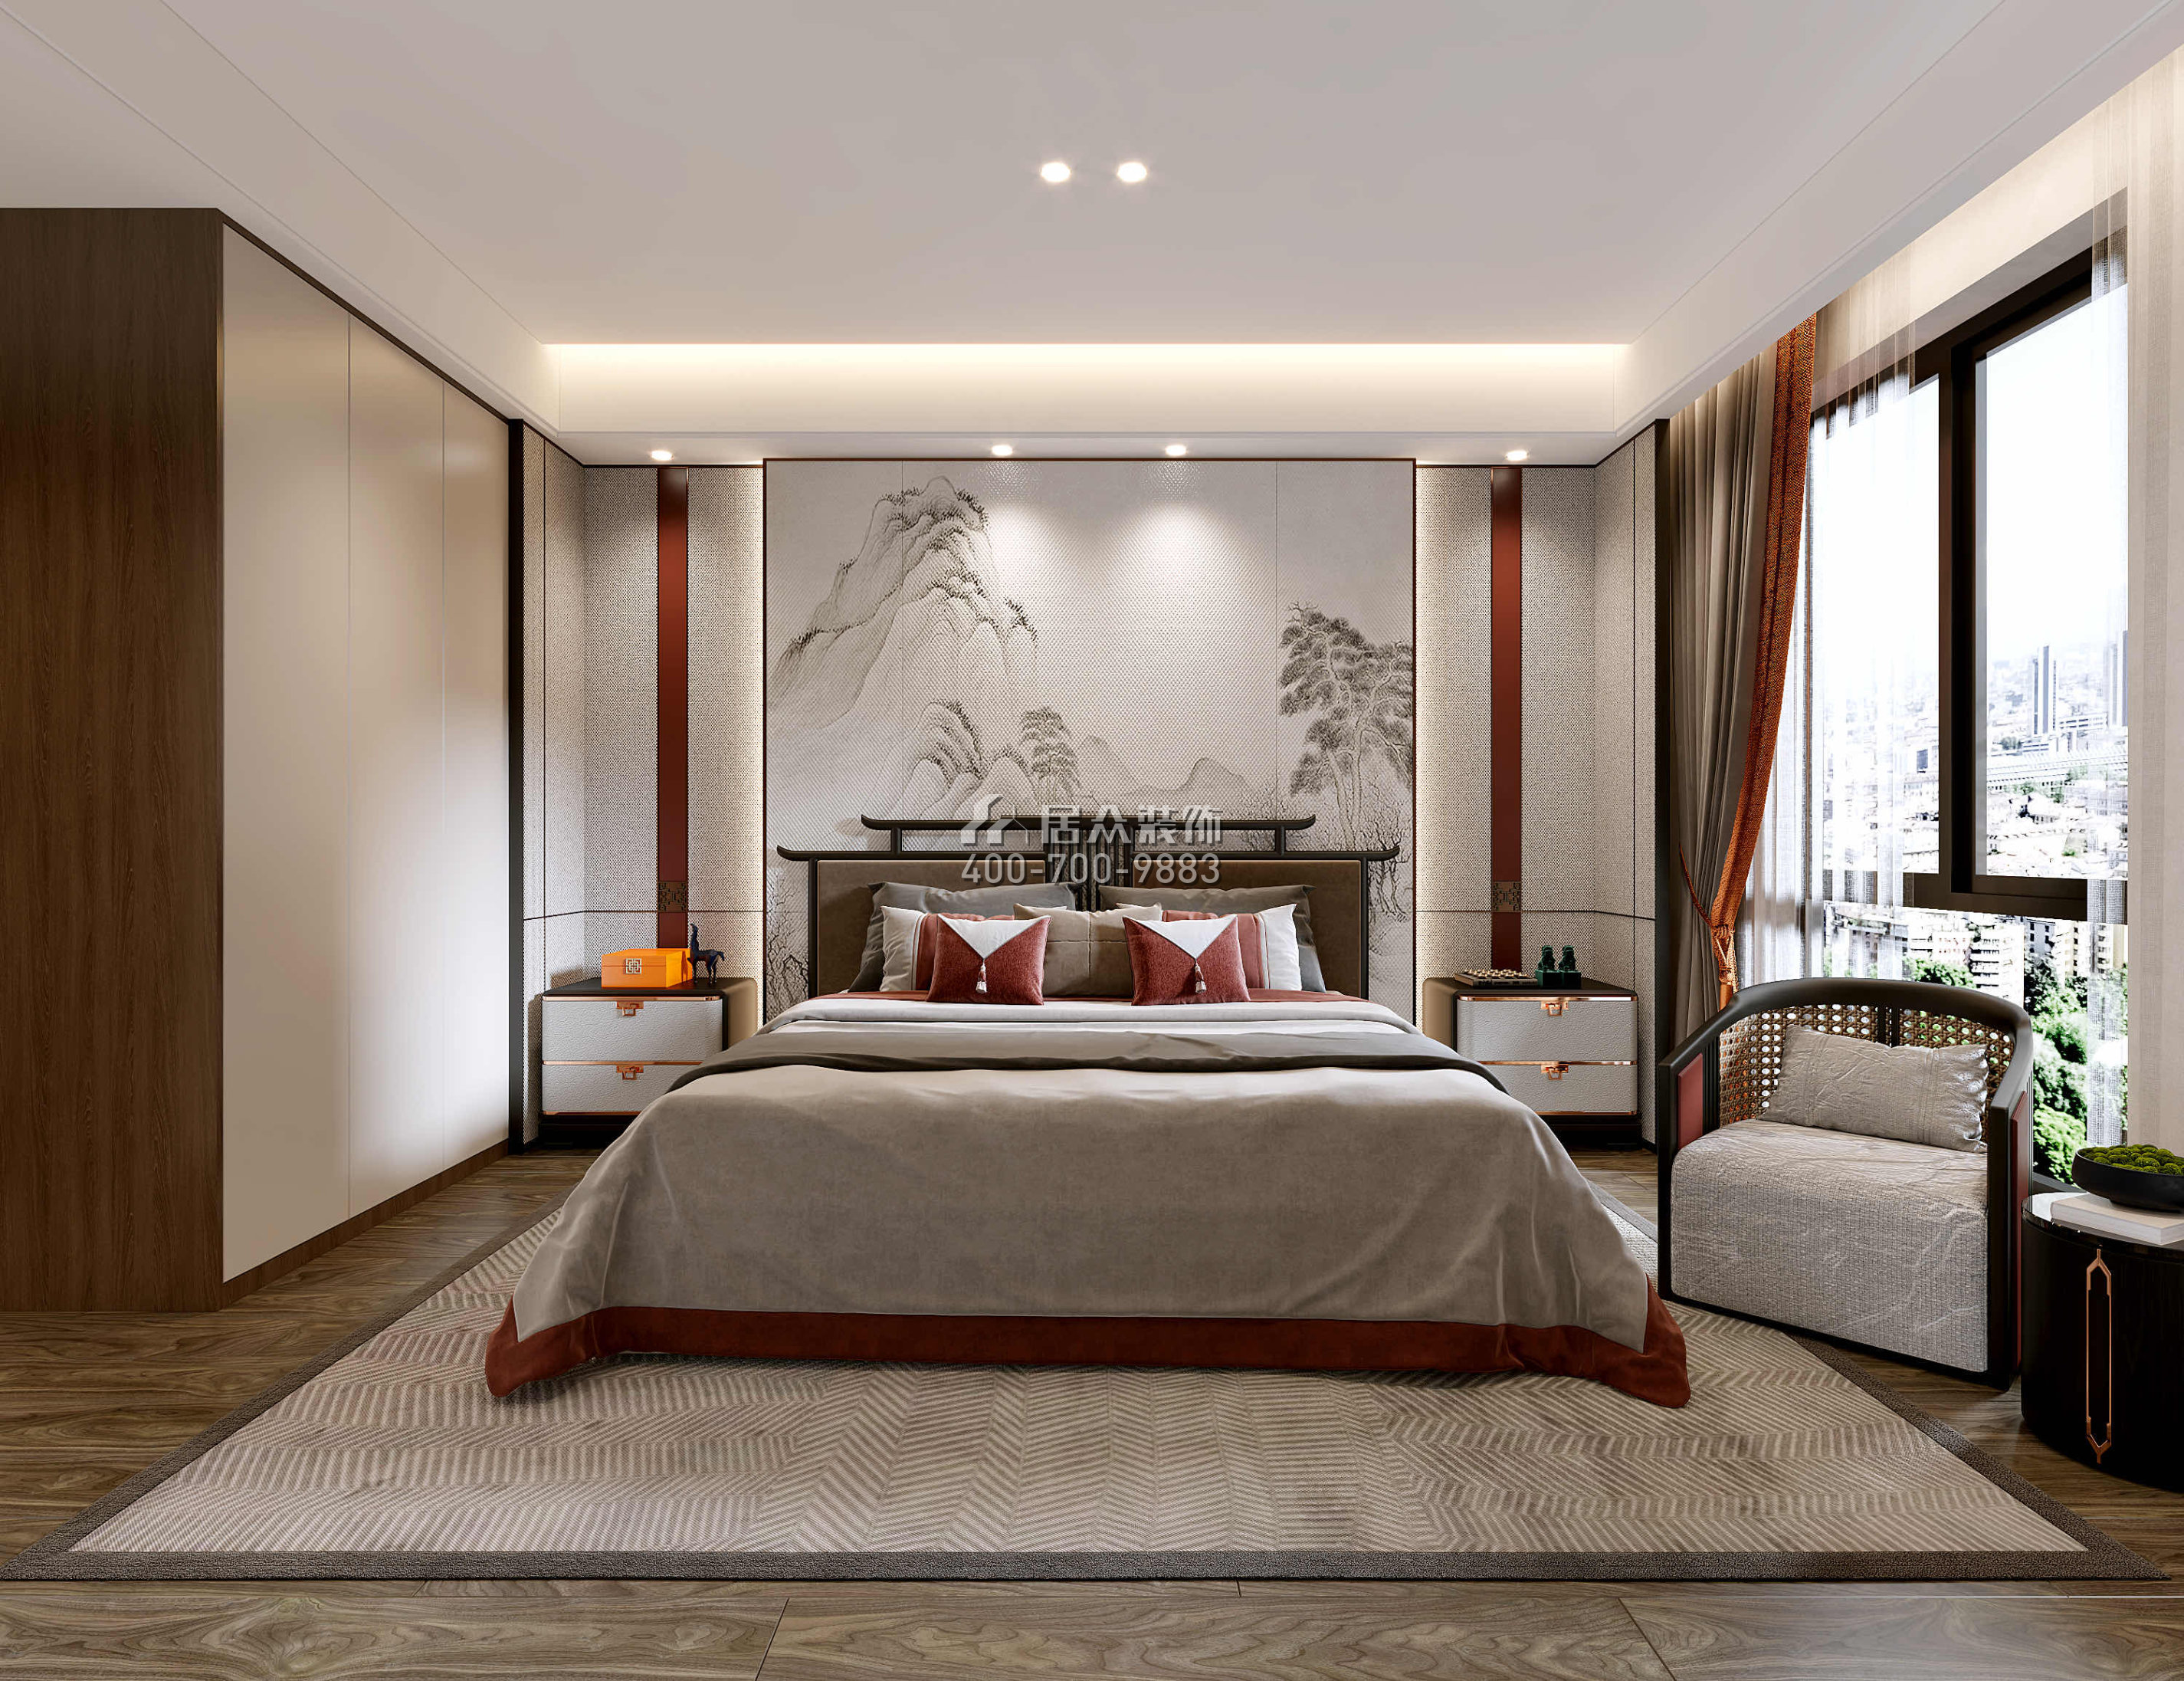 观岭高尔夫豪庭430平方米中式风格别墅户型卧室装修效果图